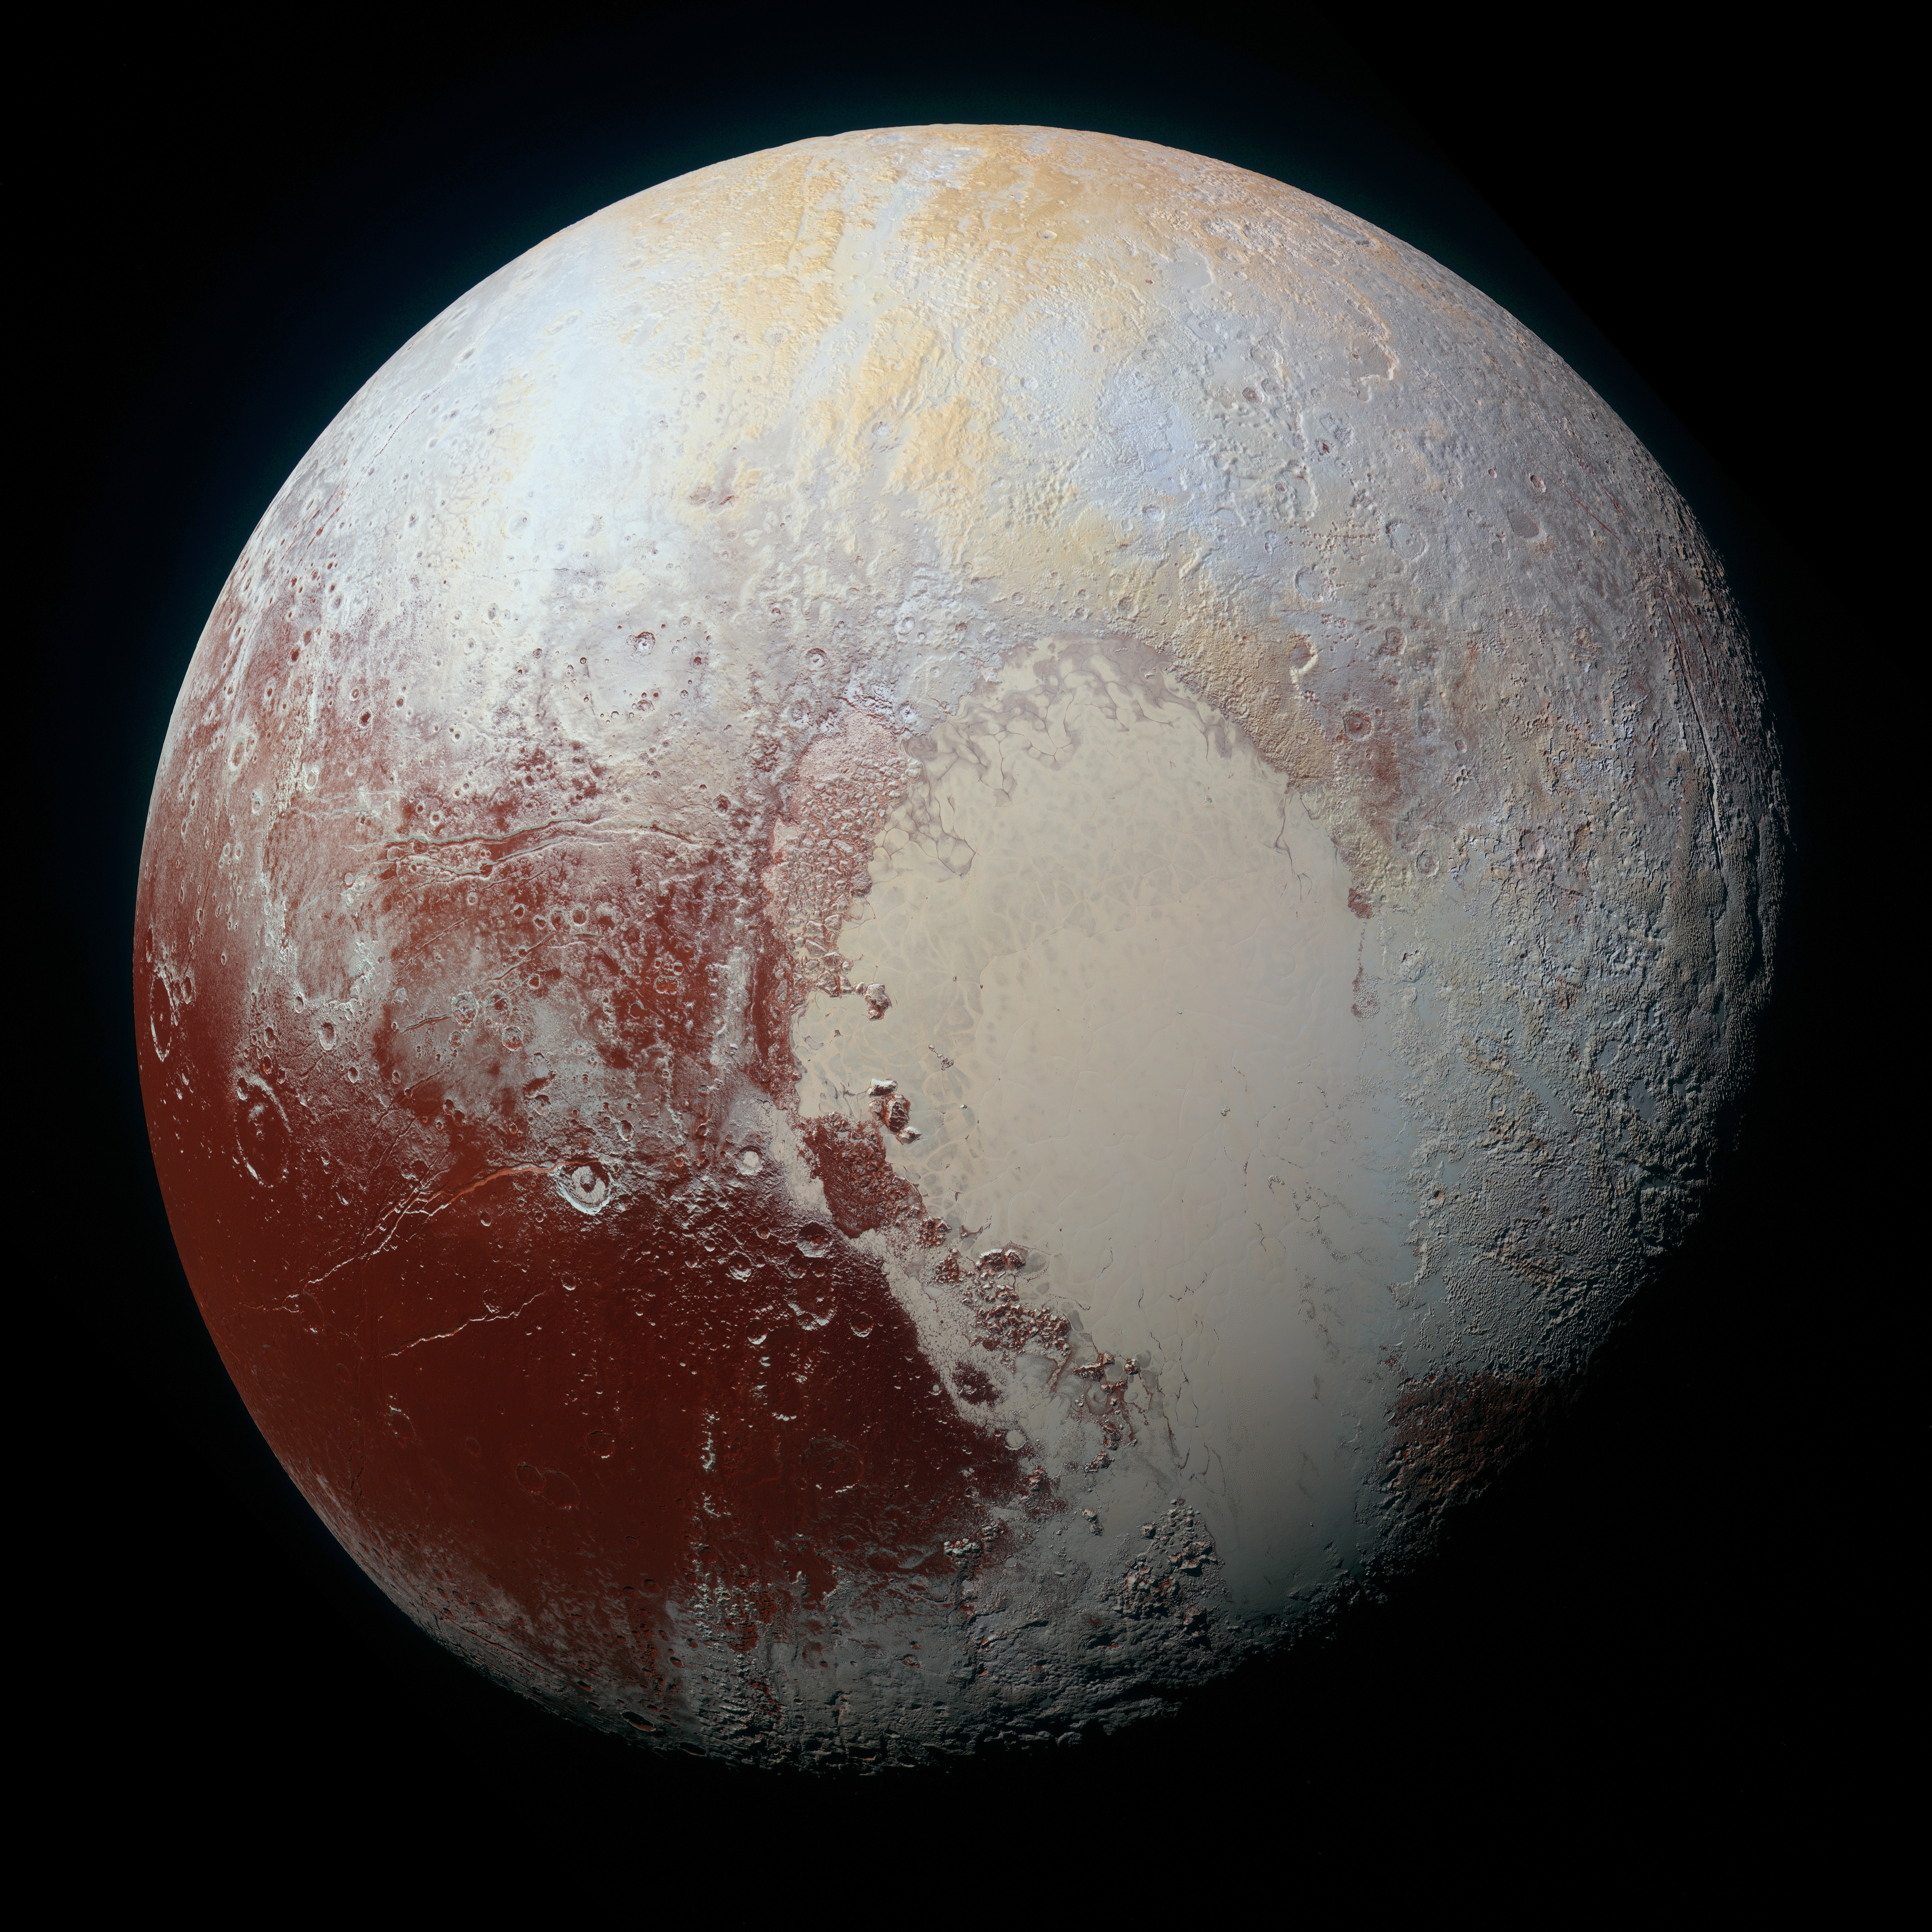 Pluto Backgrounds, Compatible - PC, Mobile, Gadgets| 8000x8000 px